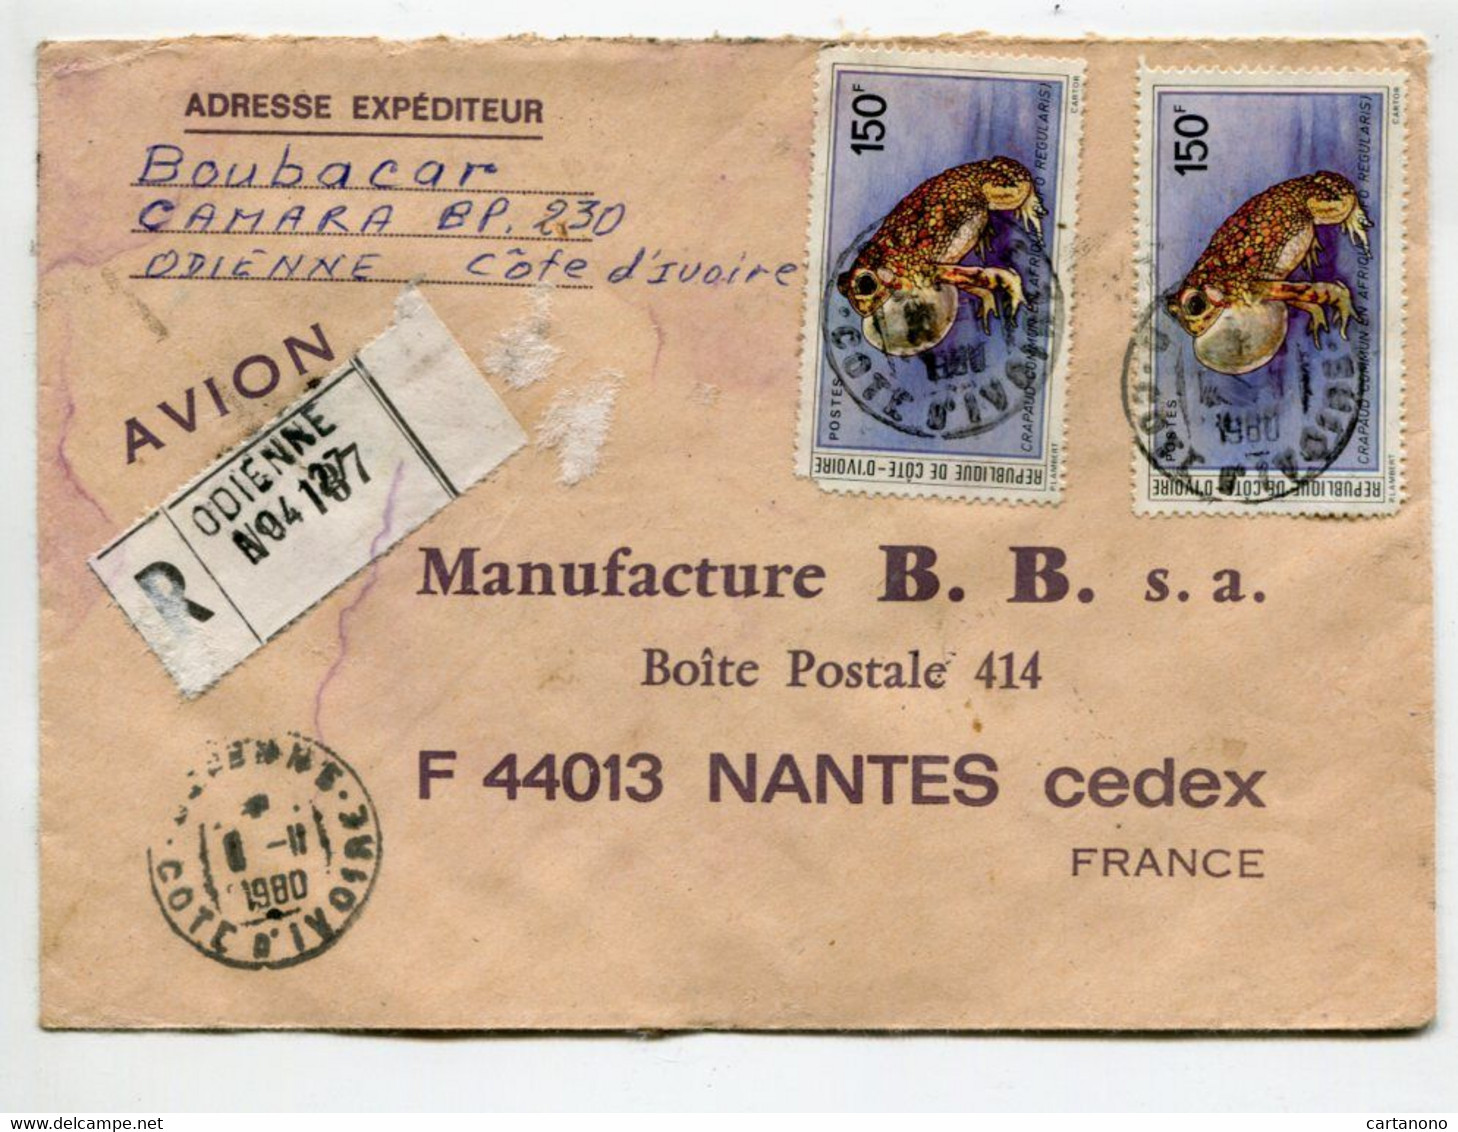 COTE D'IVOIRE 1980 - Affranchissement Sur Lettre Recommandée - Grenouille - Rane